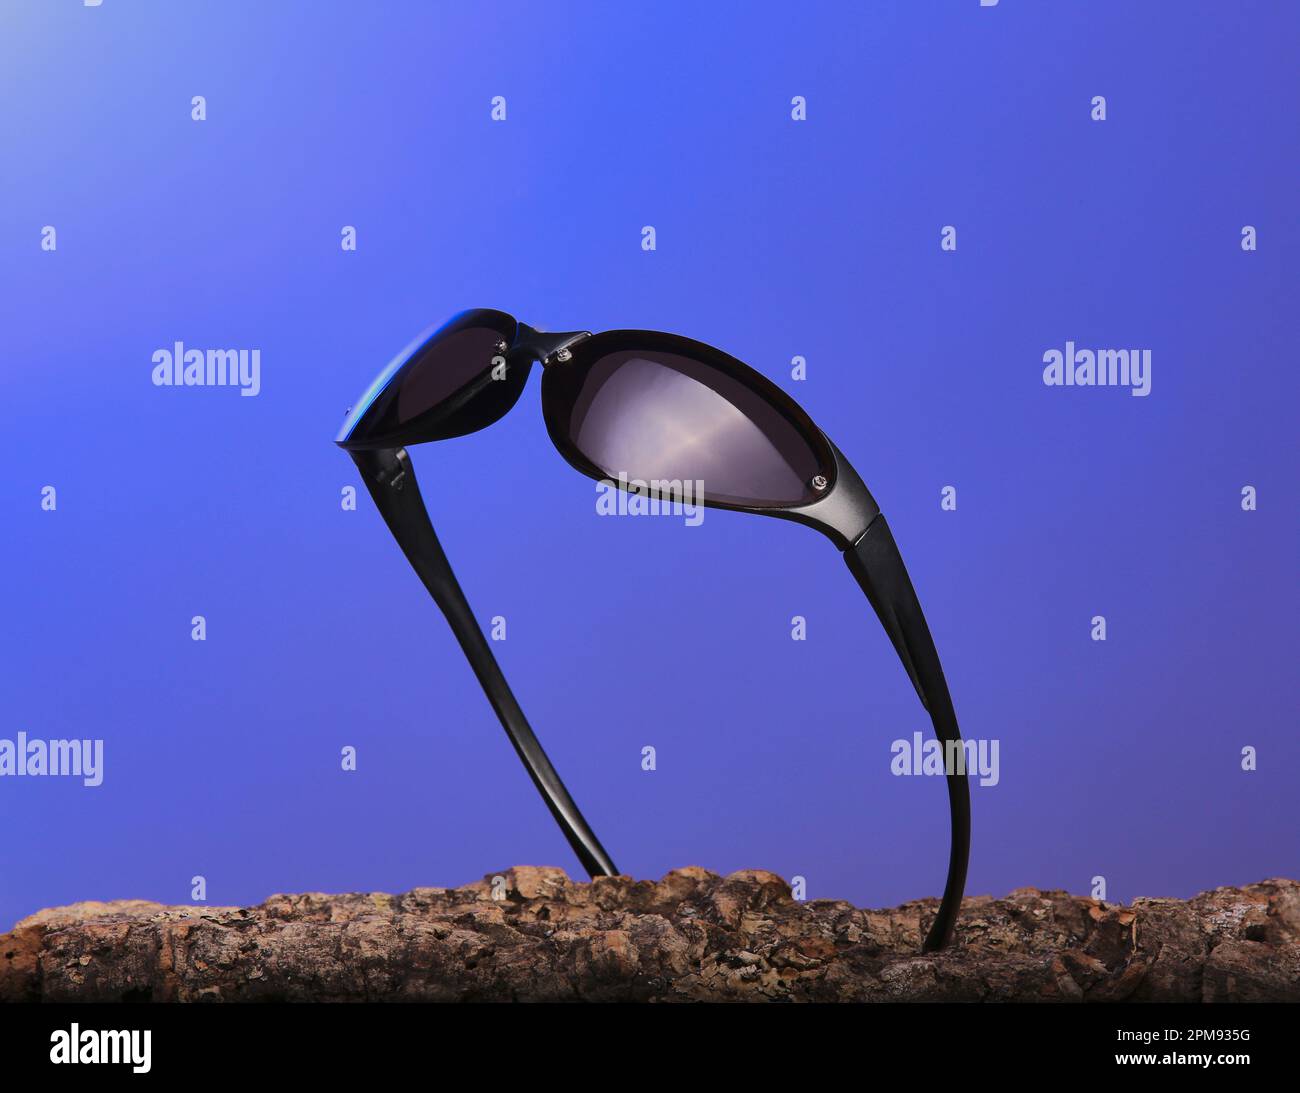 Eine coole polarisierte Sonnenbrille mit einem hübschen Farbverlauf auf den Gläsern. Stockfoto